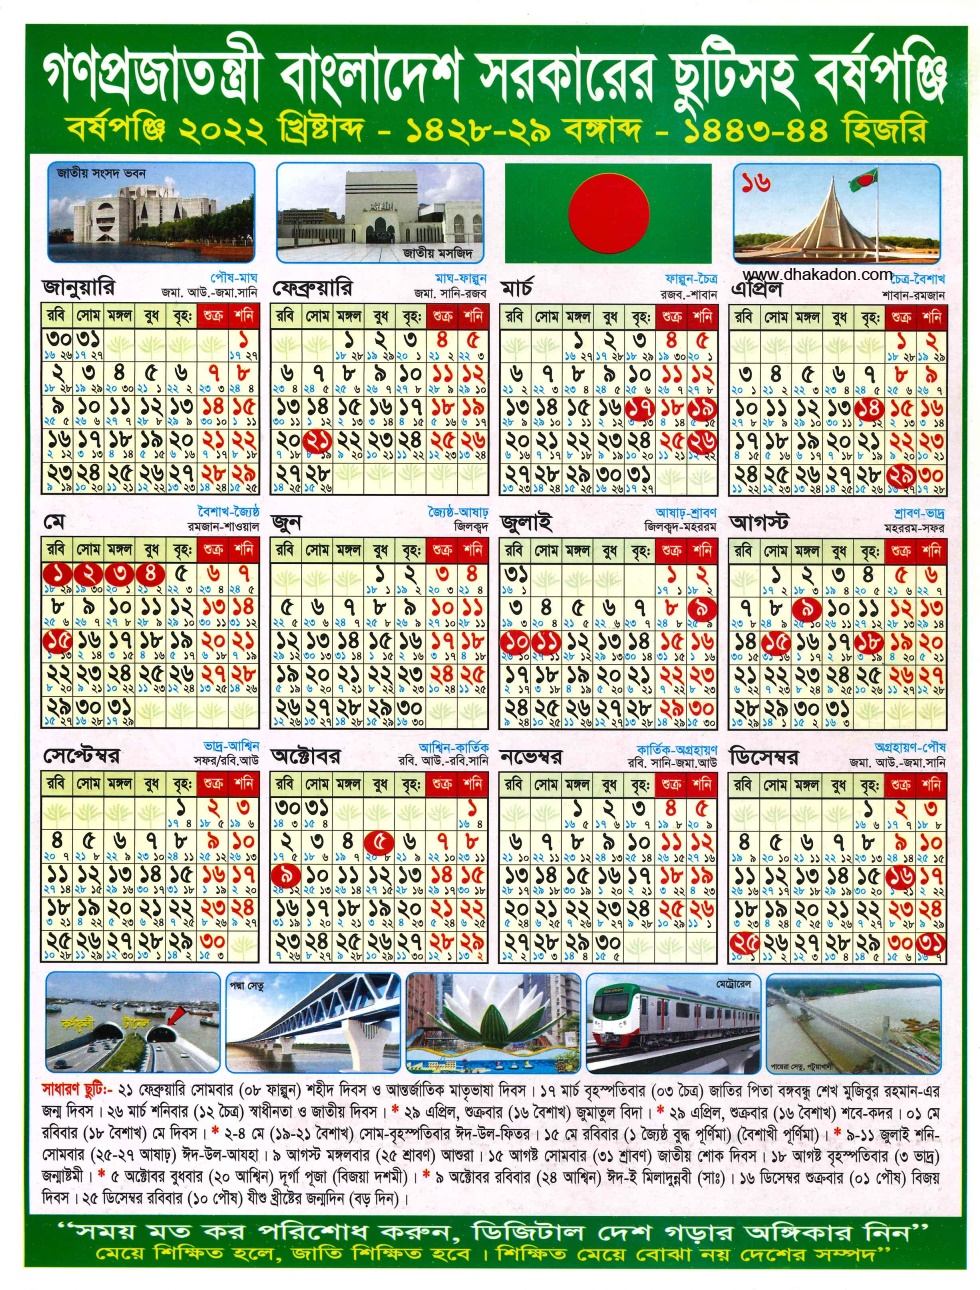 Holiday Calendar For 2022 Bangladesh Government Holidays Calendar 2022 - Dhakadon.com